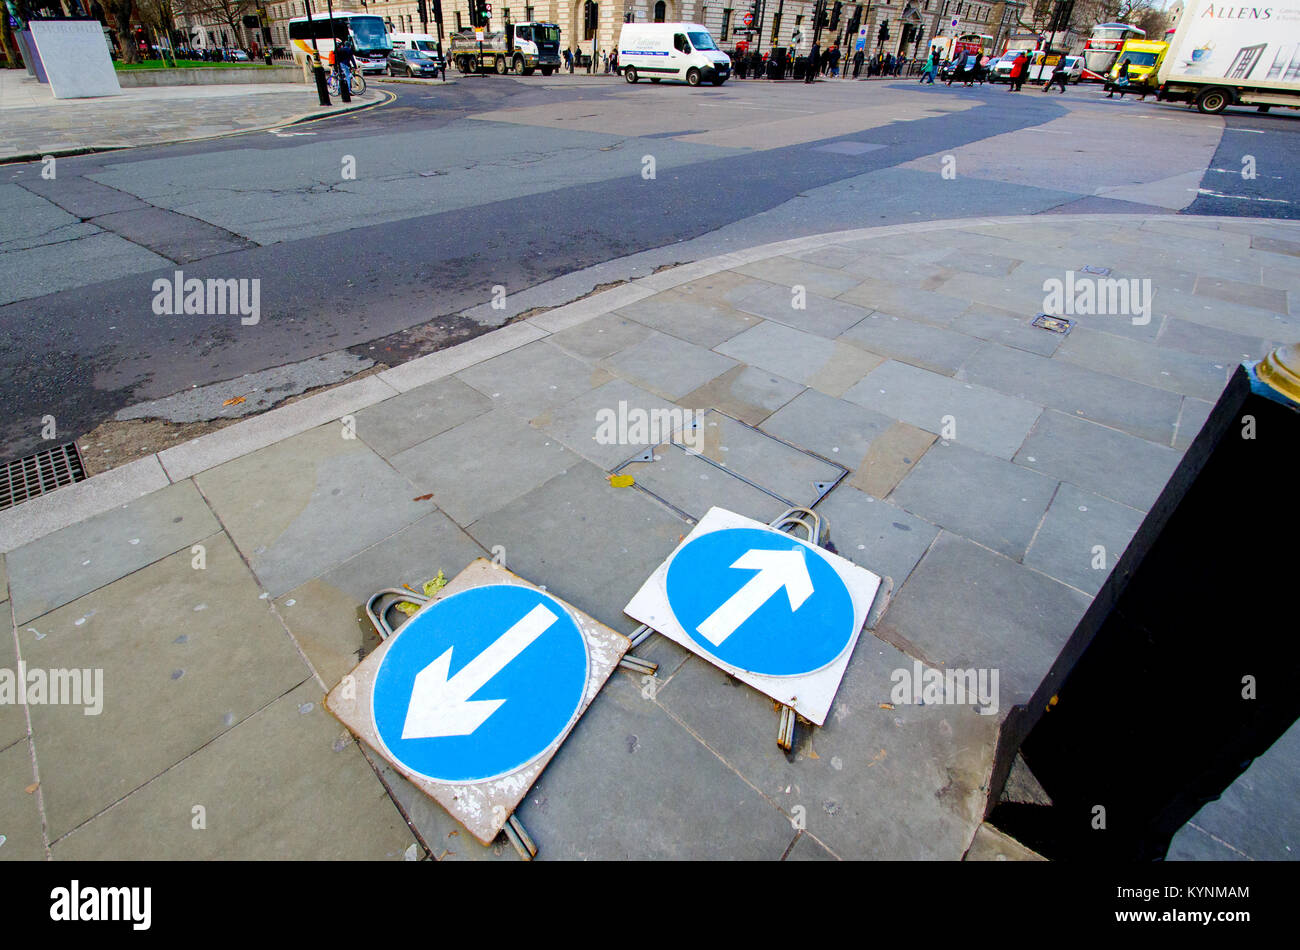 London, England, UK. Verkehr Pfeil Zeichen flach auf den Boden zeigen in unterschiedliche Richtungen, in Parliament Square Stockfoto